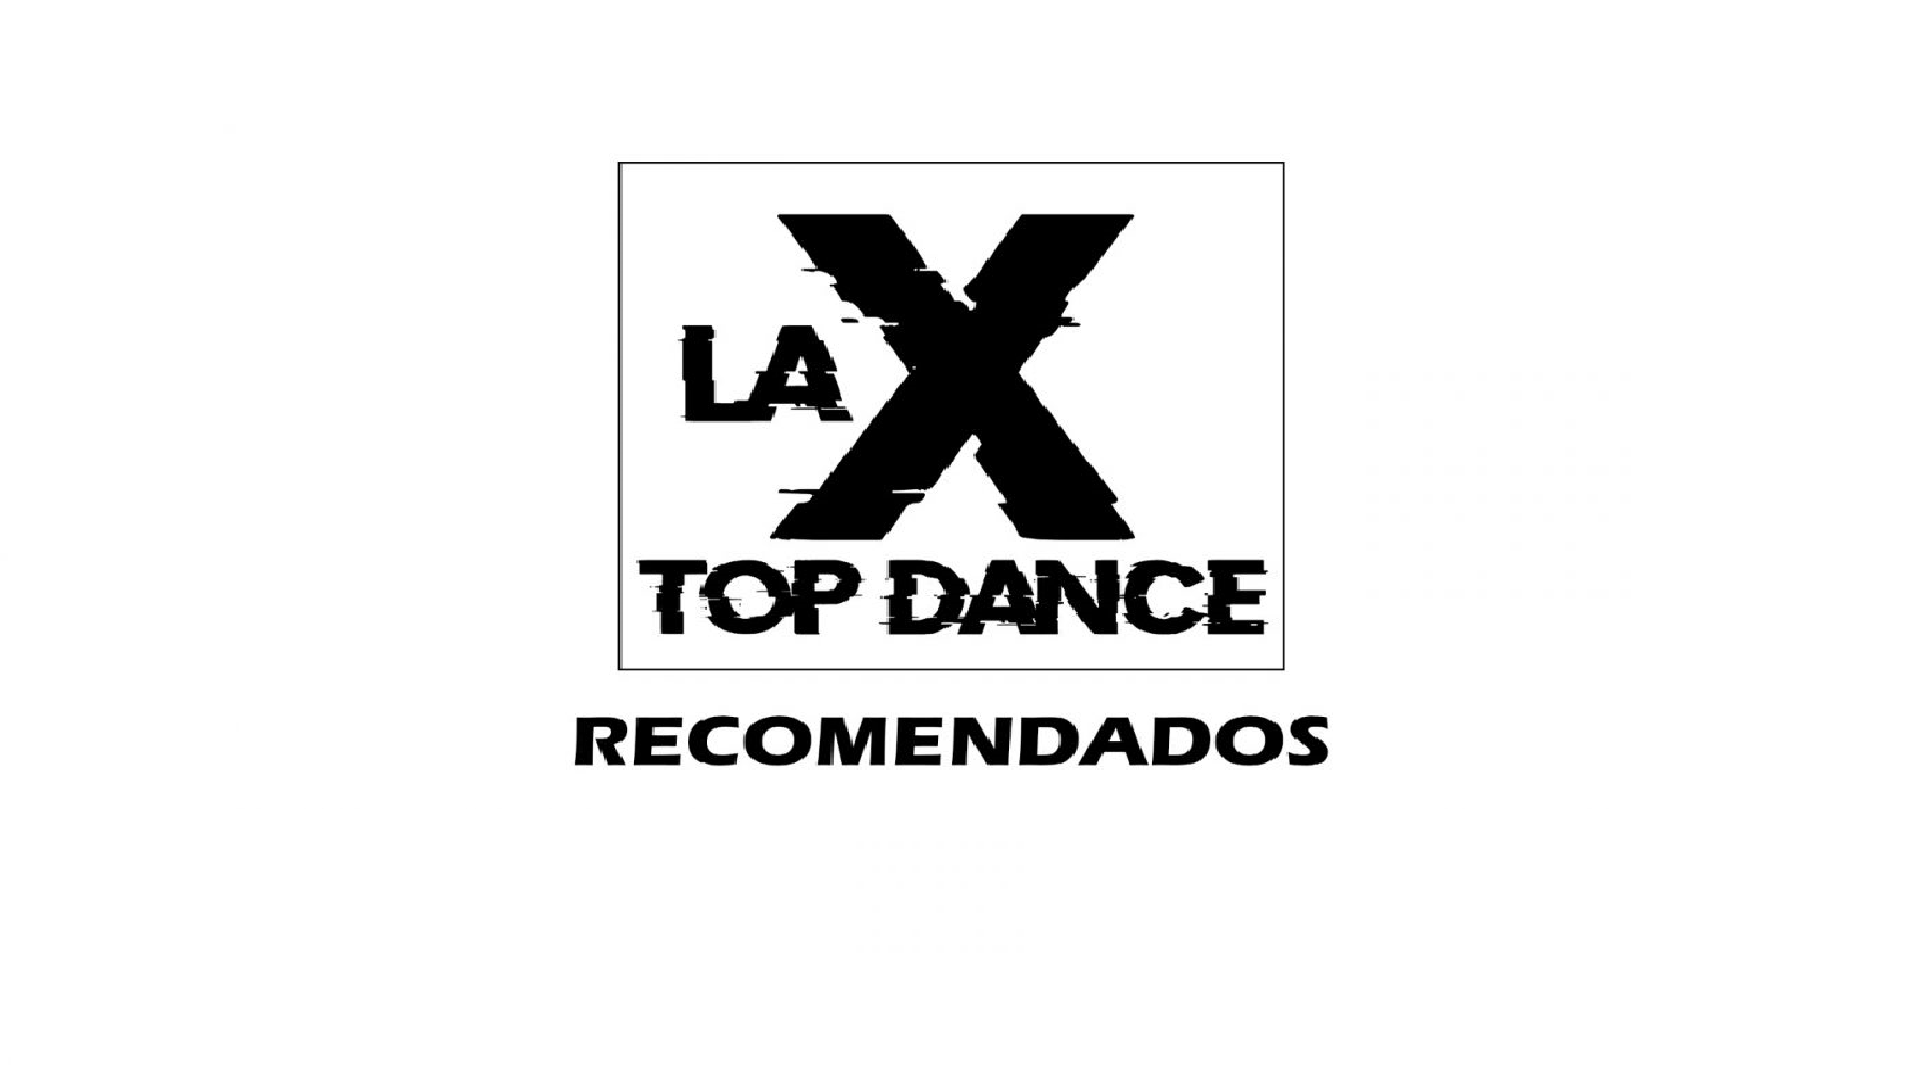 LA X TOP DANCE RECOMENDADOS  23 DE JULIO